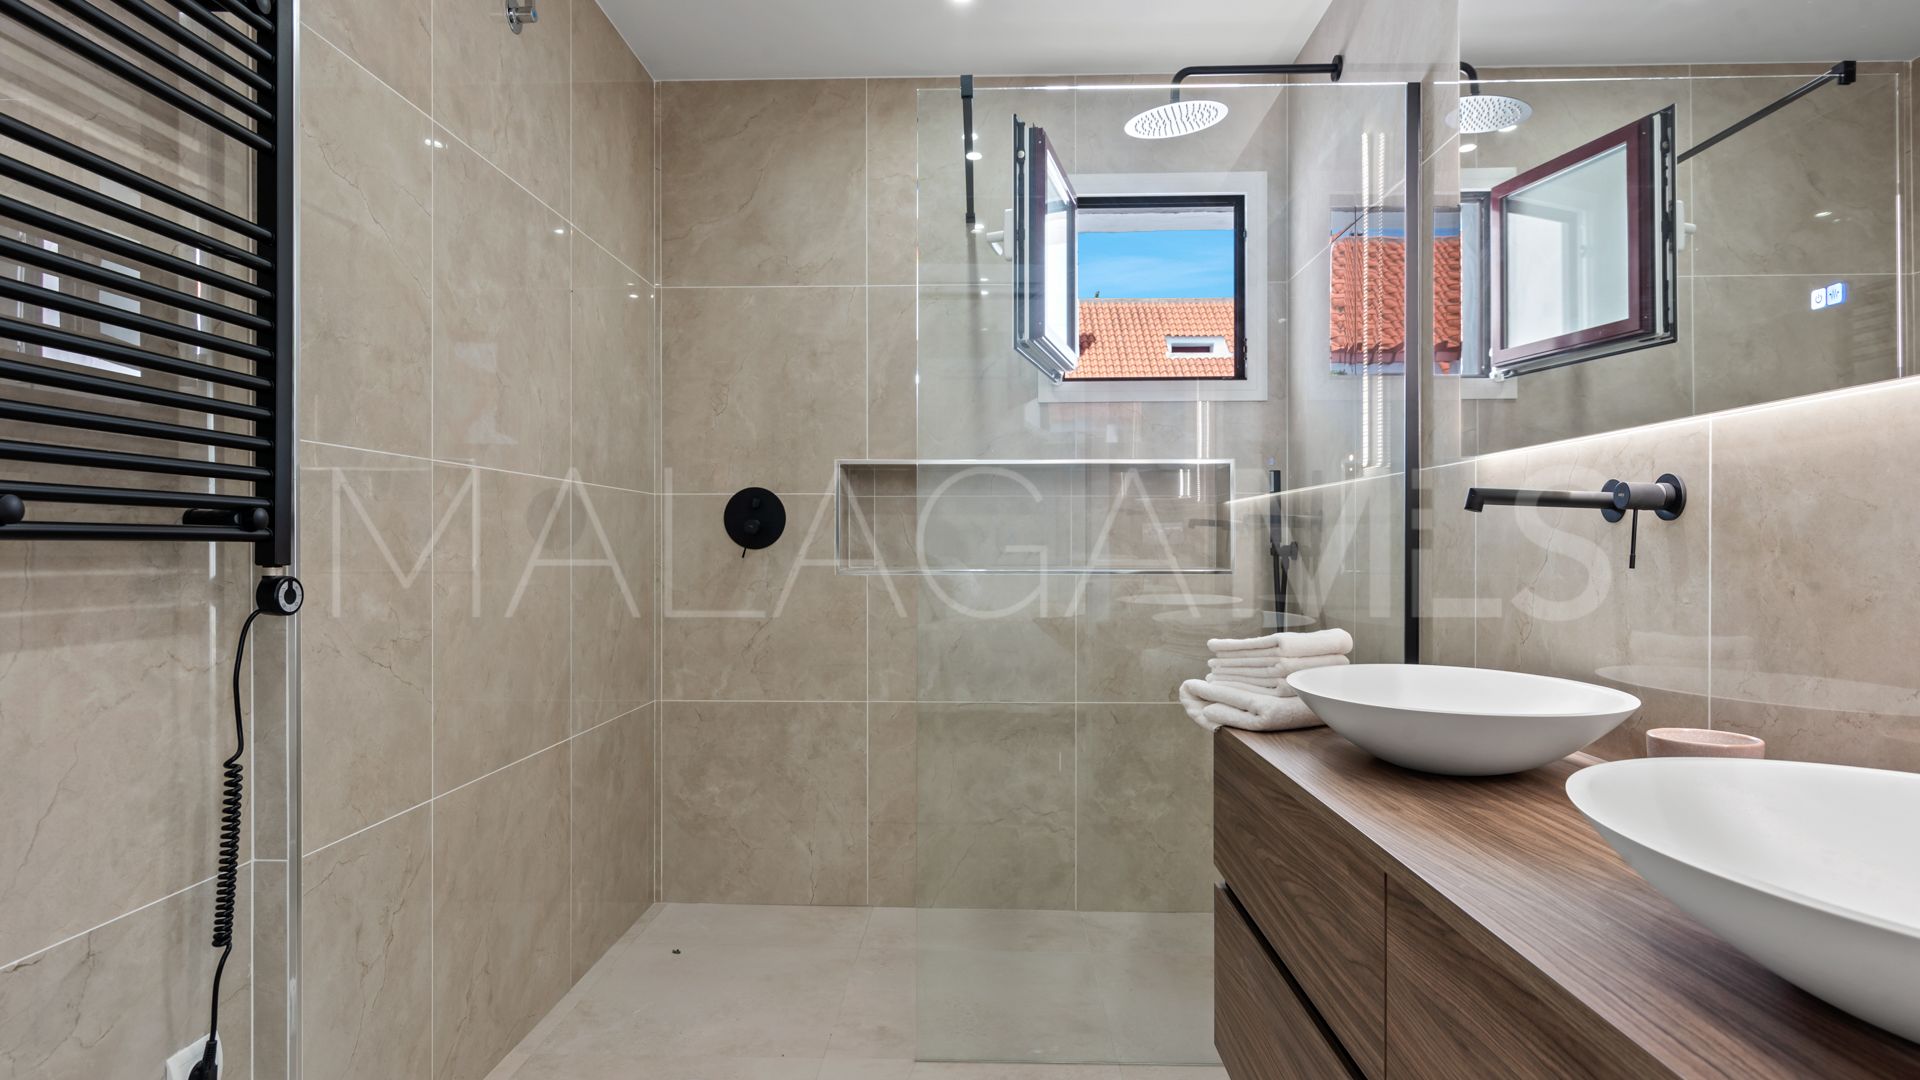 Atico for sale with 3 bedrooms in La Maestranza